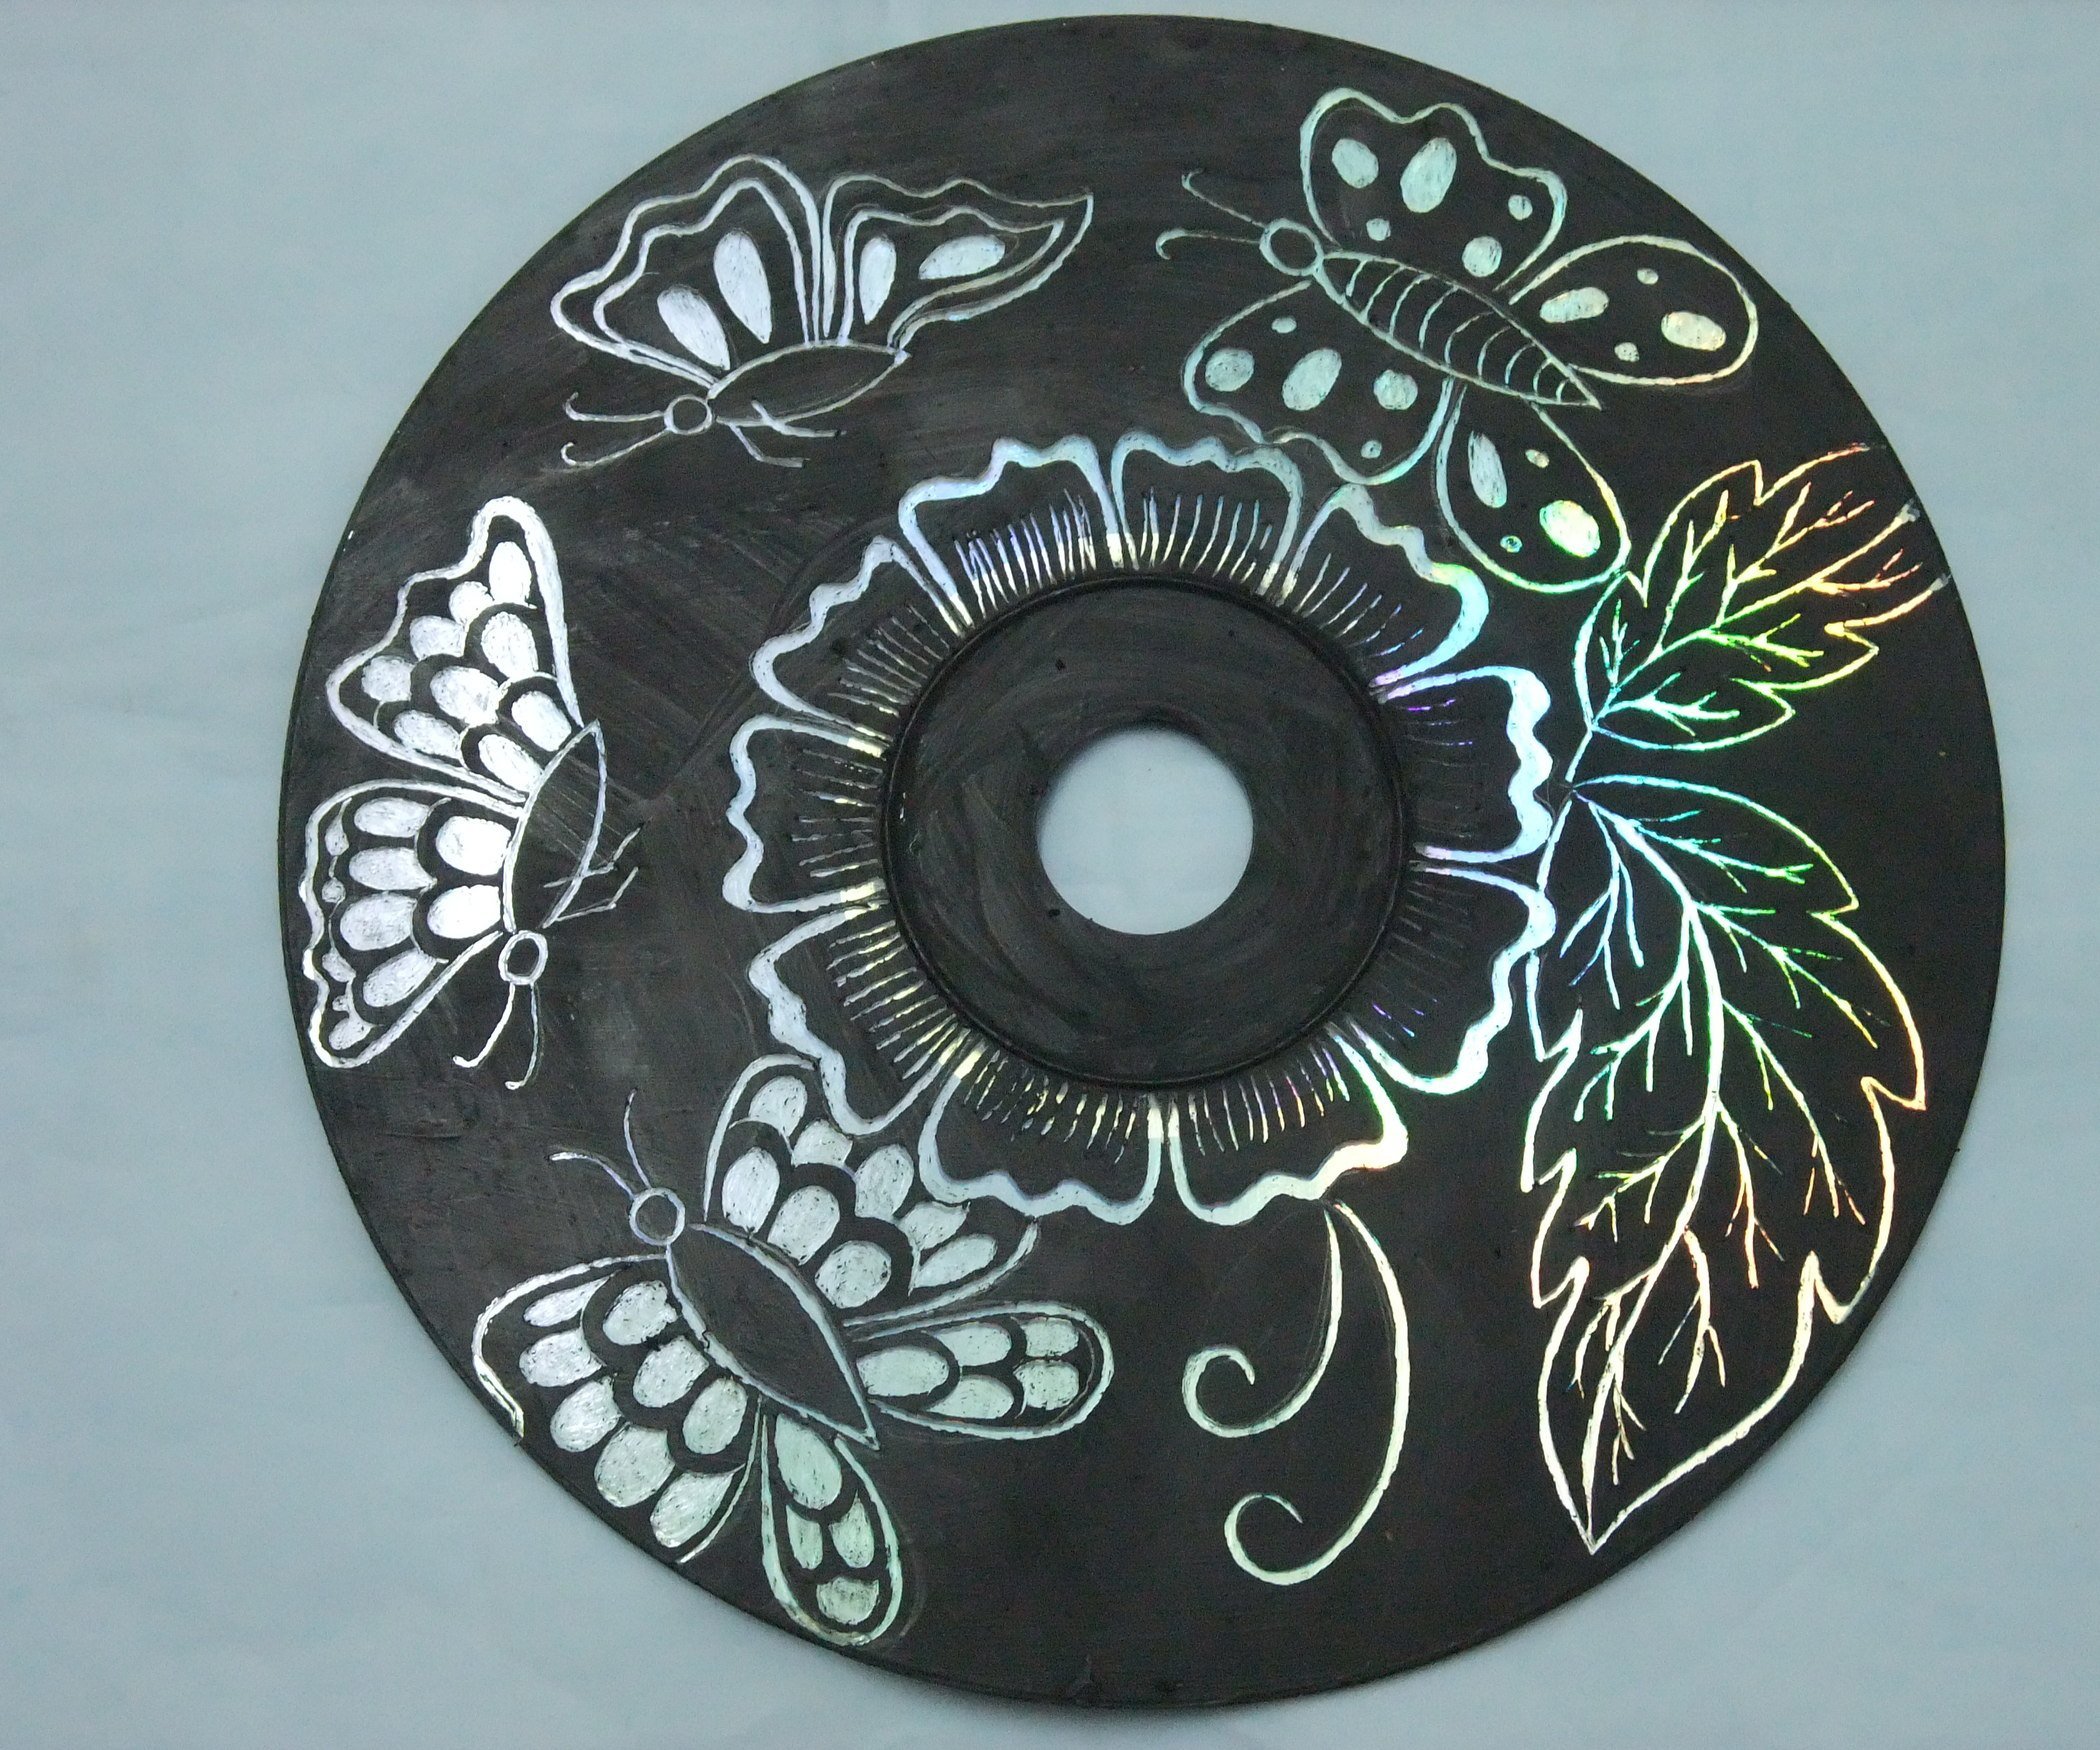 Разрисованные диски